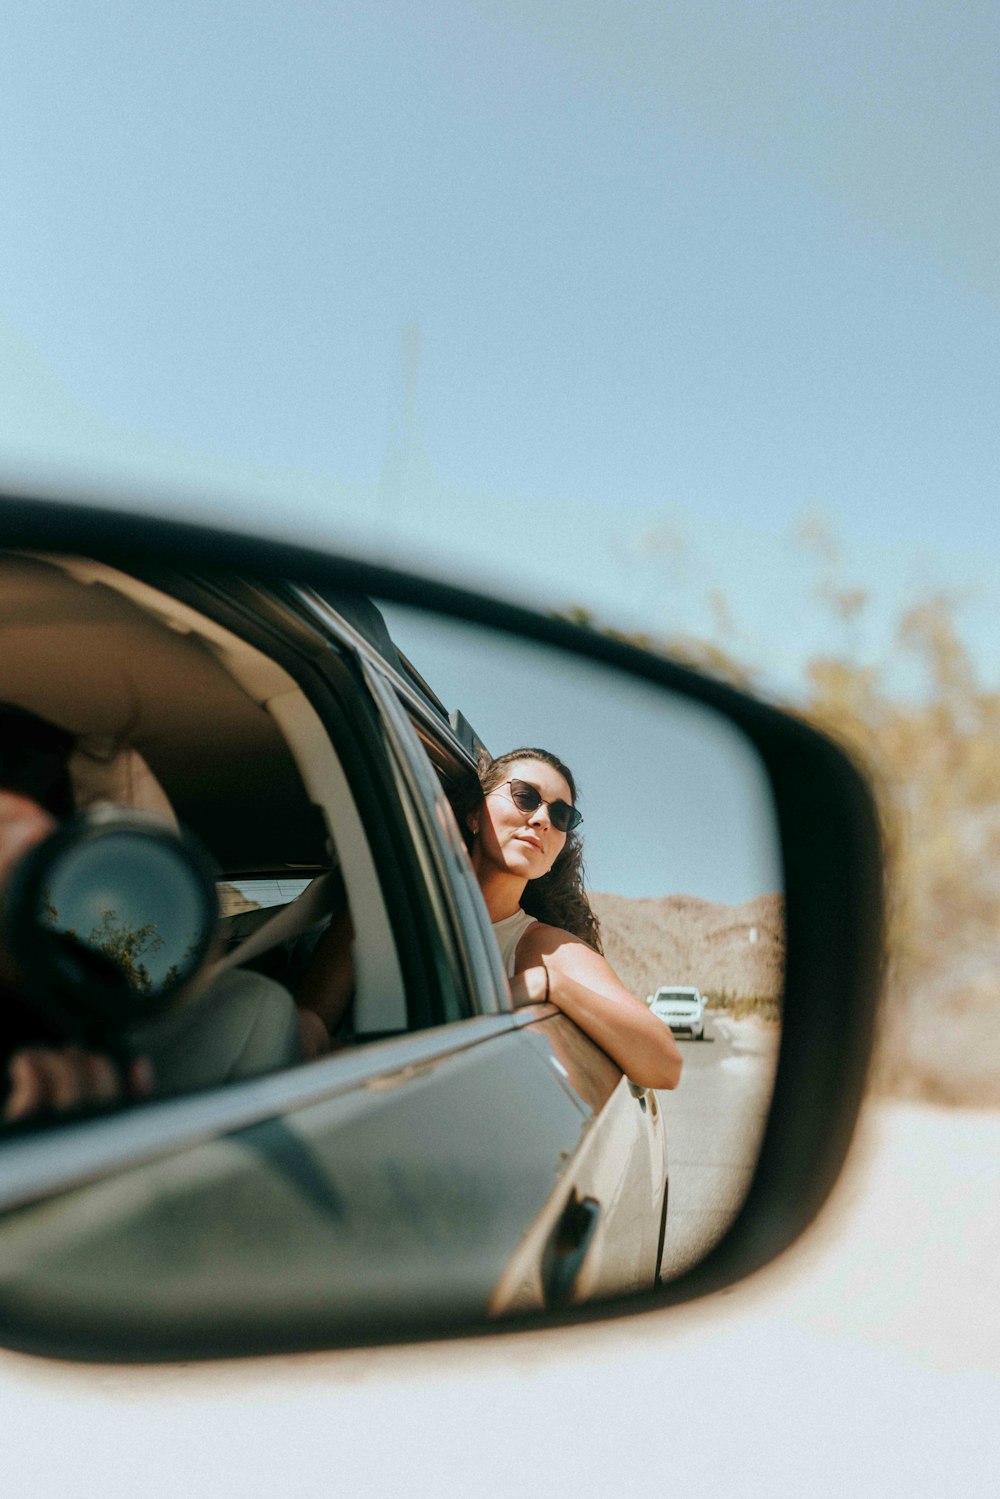 Femme en chemise blanche et jupe marron portant des lunettes de soleil noires conduisant une voiture pendant la journée